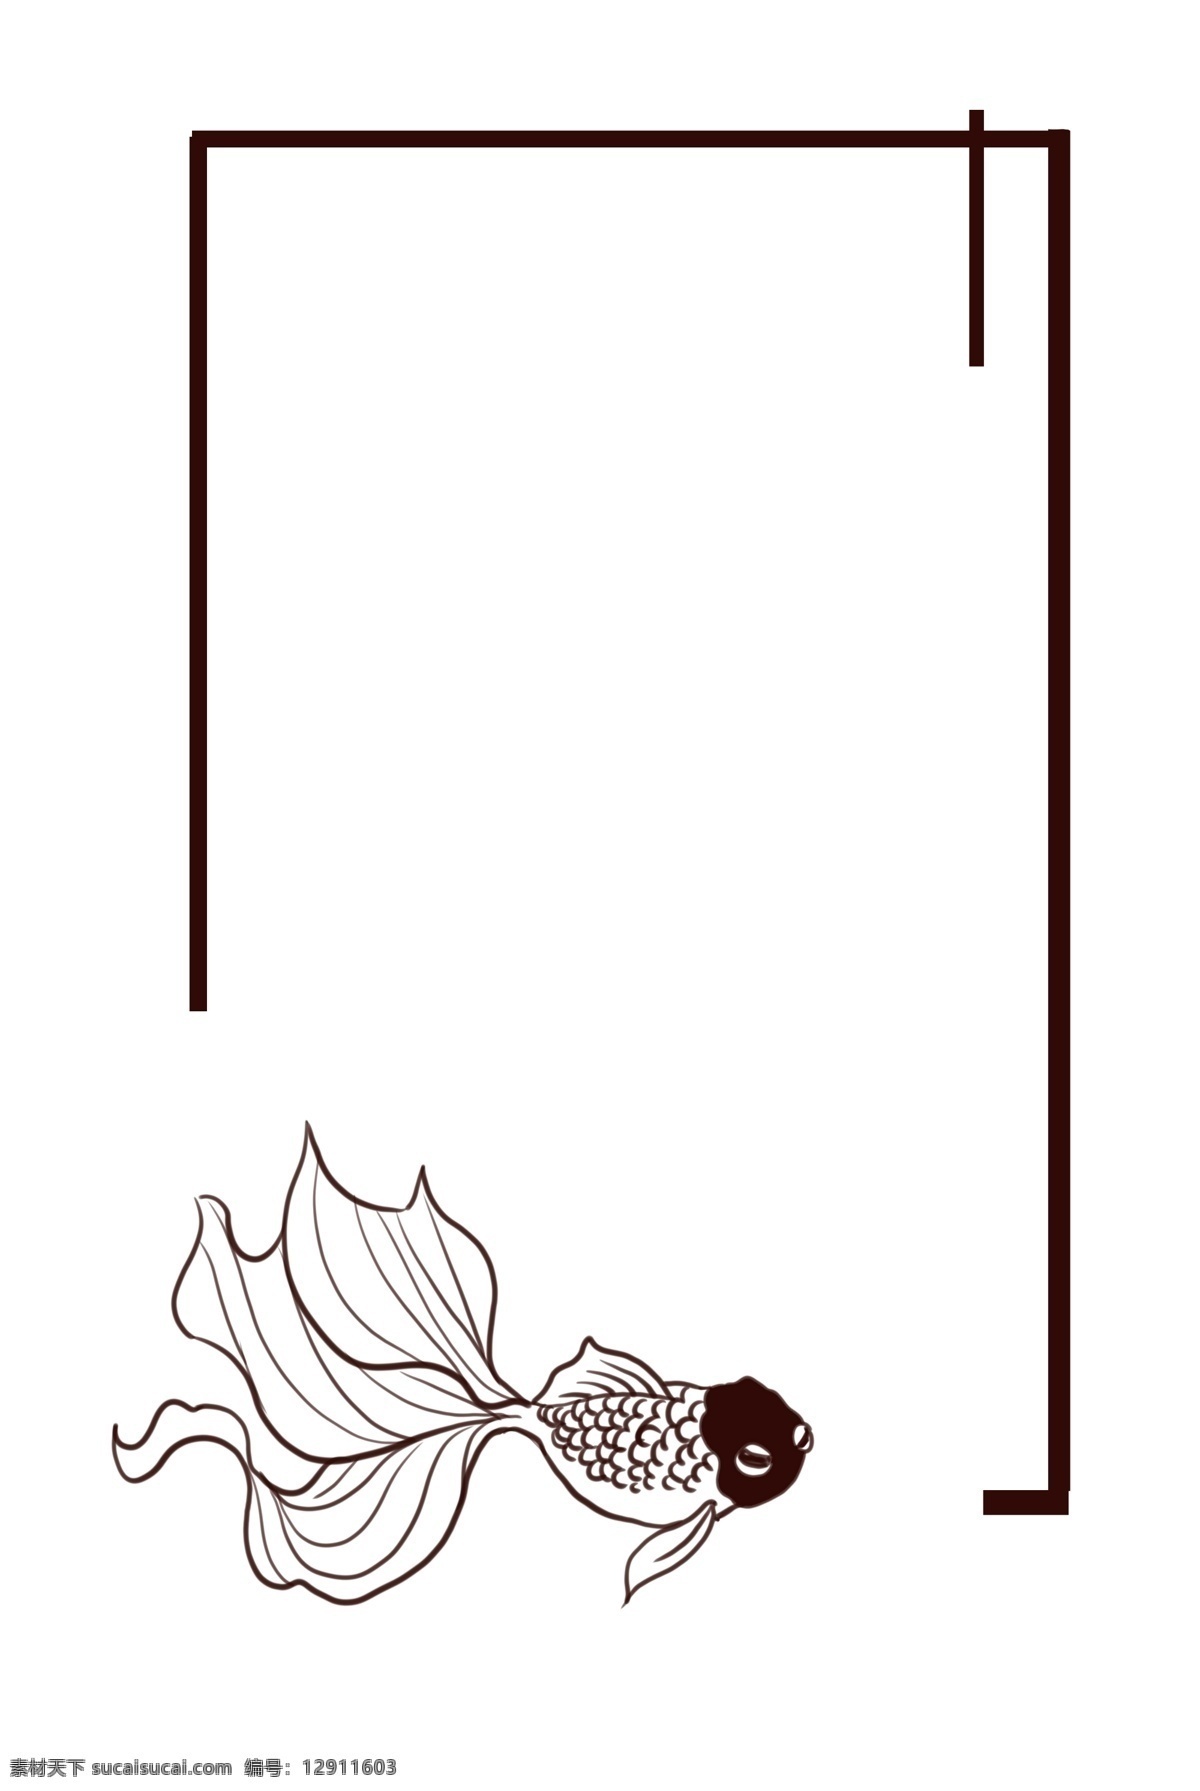 中国 风 手绘 锦鲤 边框 矢量图 中国风 古典风格 国风 装饰 古典边框 卡通 红金鱼 白金鱼